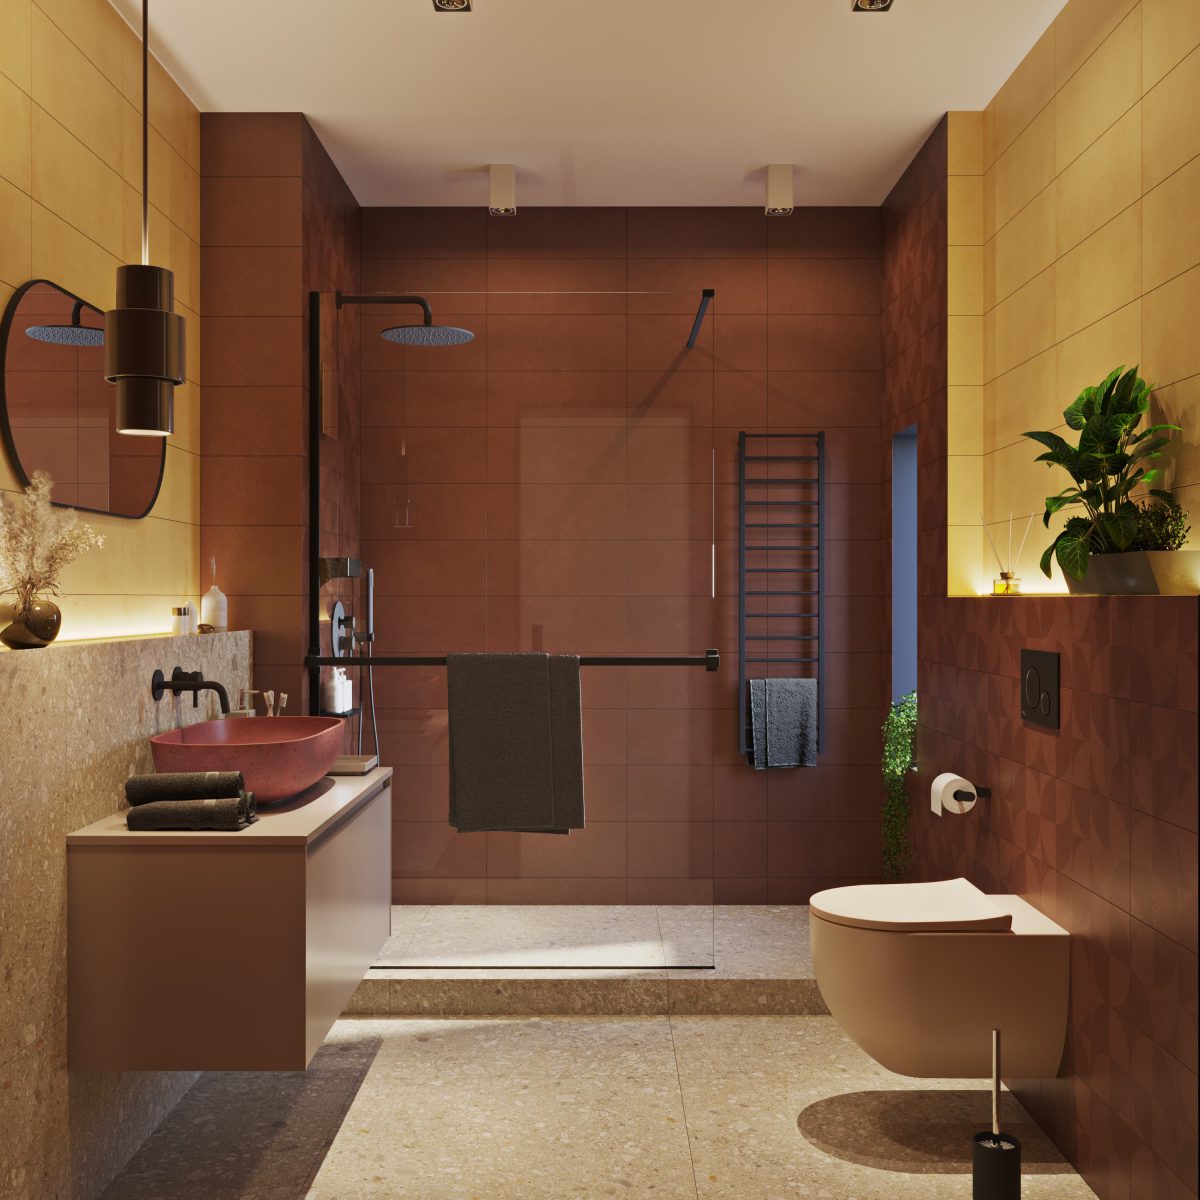 SIKO Barevná koupelna, terrazzo, zemité barvy, cihlová, žlutá, barevné umyvadlo, závěsné WC, walk in sprchový kout, černé baterie v koupelně